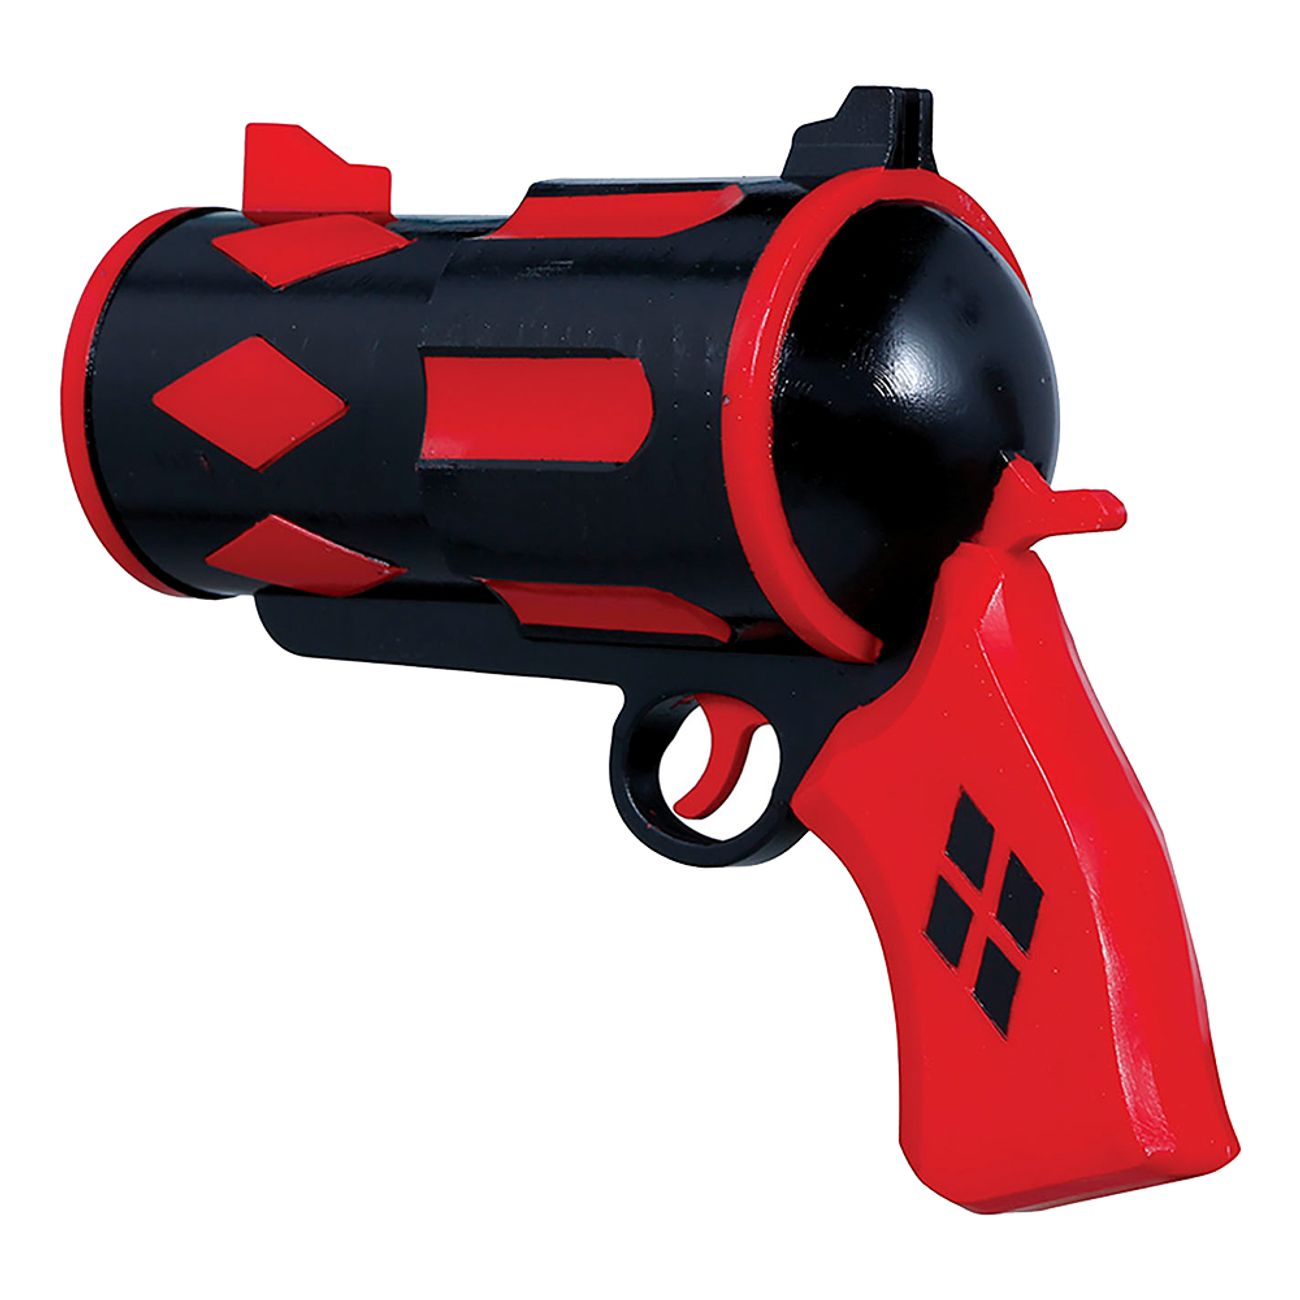 dangerous-rodsvart-pistol-98417-3